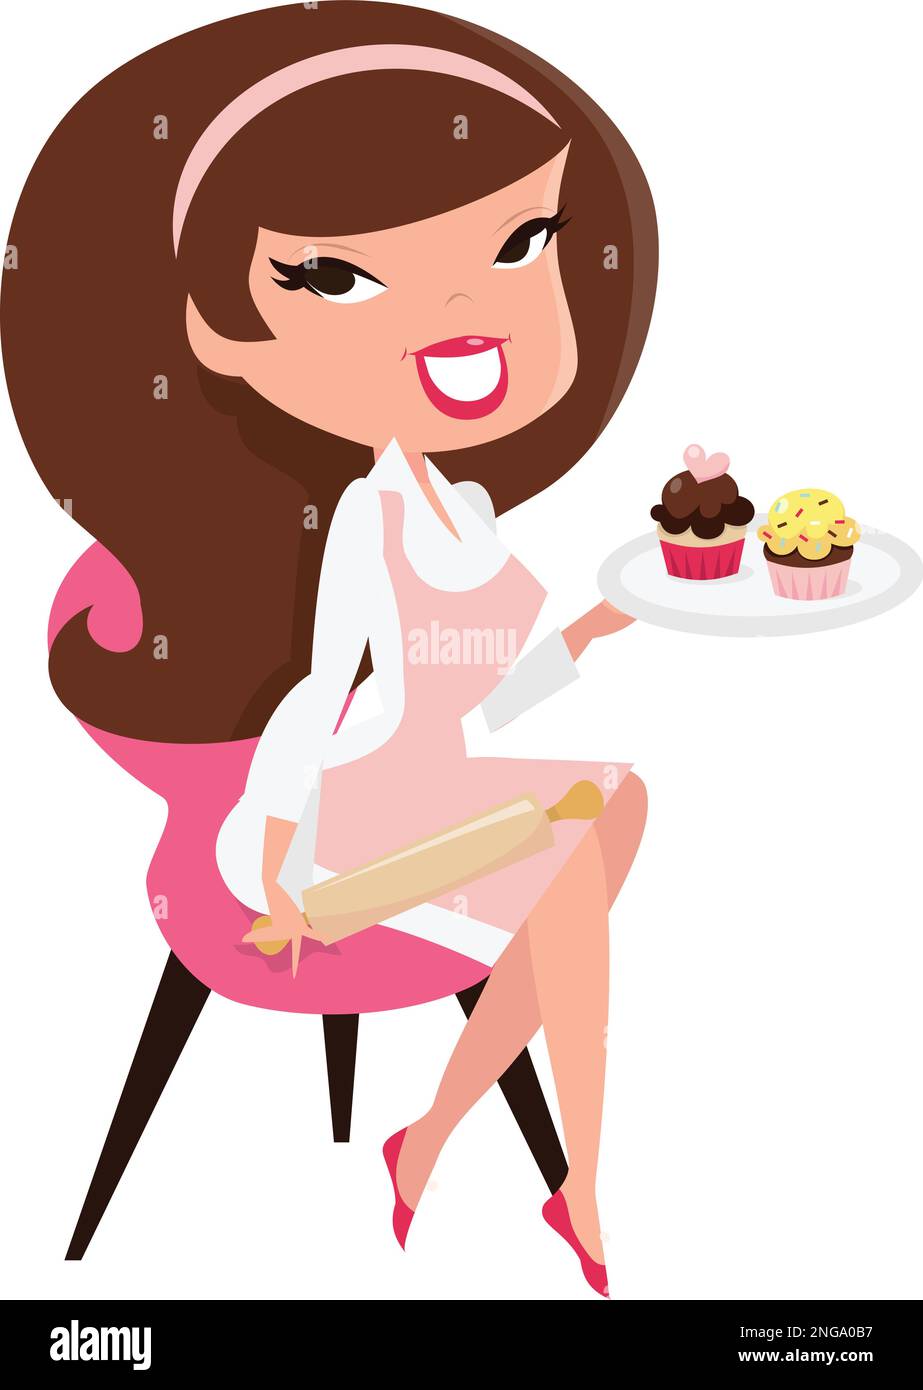 Ein Cartoon-Vektor, der zeigt, wie ein niedliches Mädchen im Retro-Stil auf einem Stuhl sitzt und eine Rolle in einer Hand hält, während es ein Tablett mit Cupcakes hält. Stock Vektor